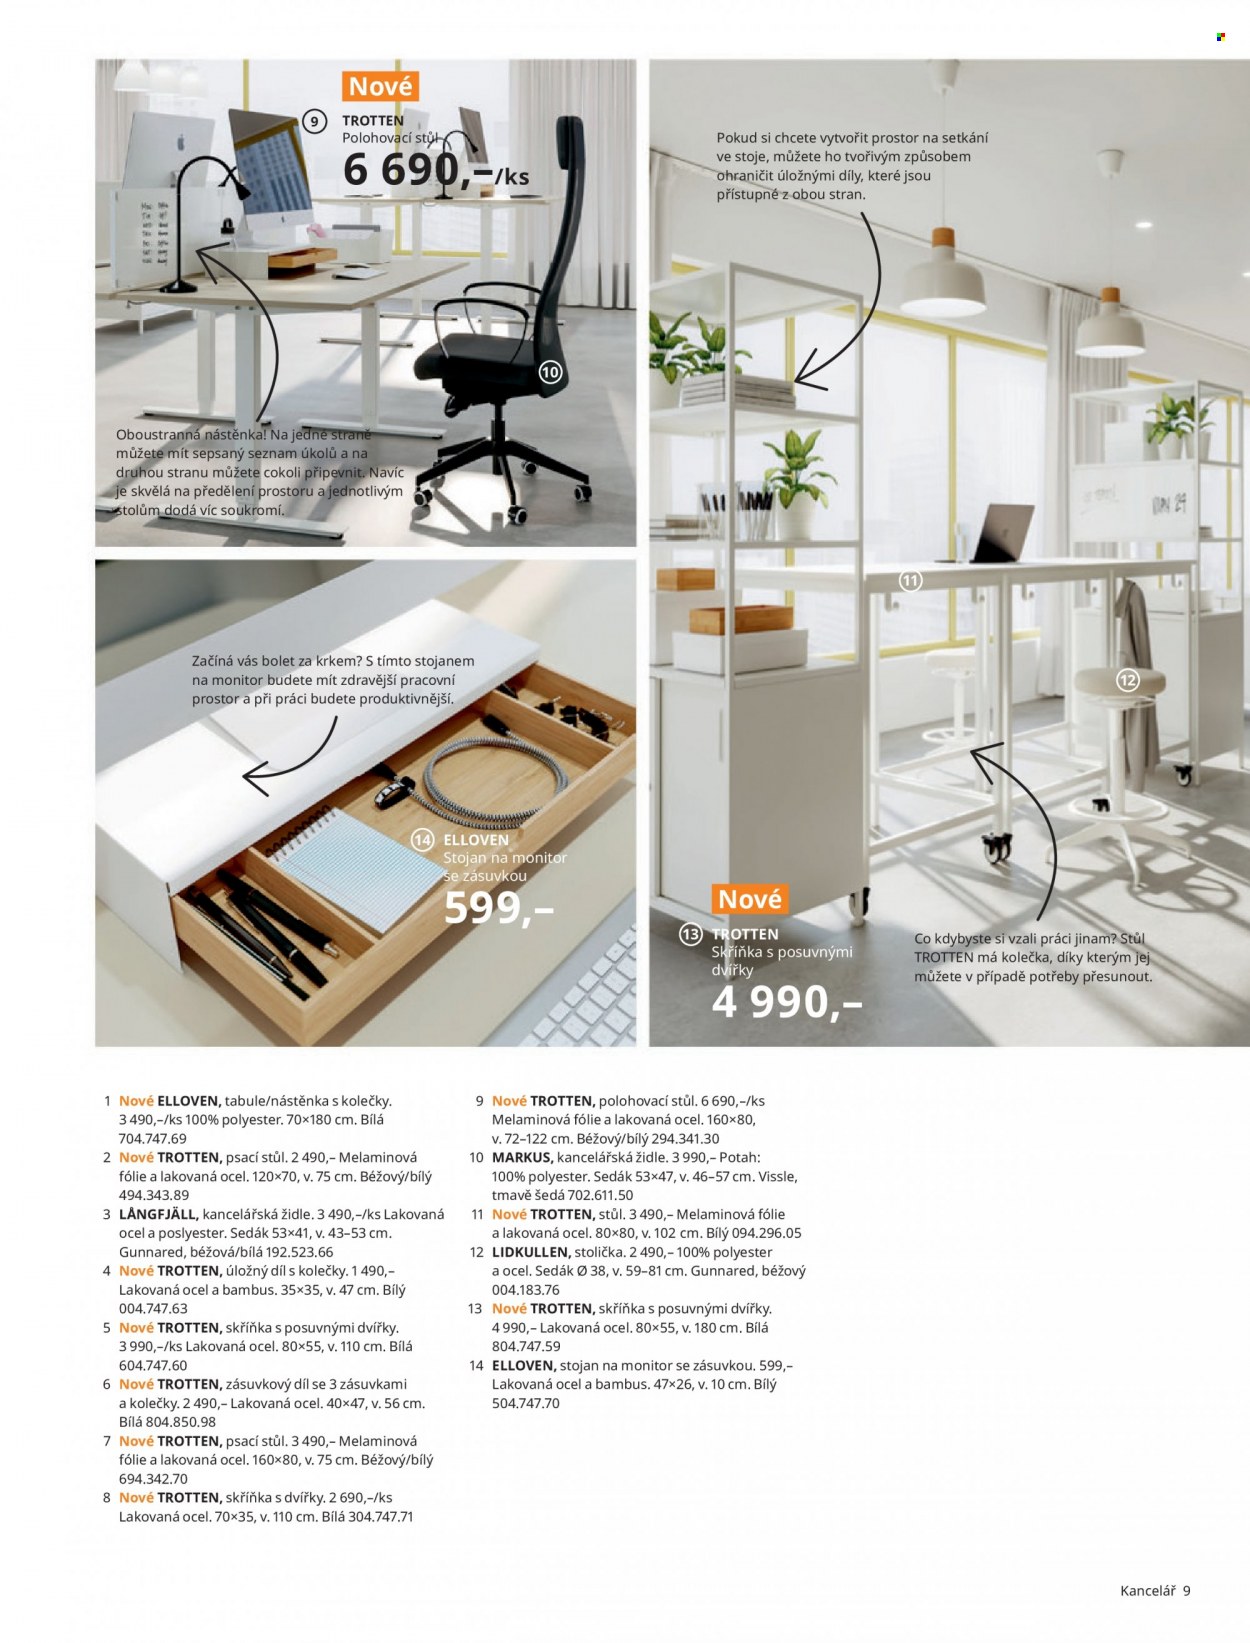 thumbnail - Leták IKEA - 24.3.2022 - 30.6.2022 - Produkty v akci - tabulka, nástěnka, zásuvkový díl, stůl, stolička, židle, skříň, psací stůl, kancelářská židle, Markus, podsedák, kolečko. Strana 9.